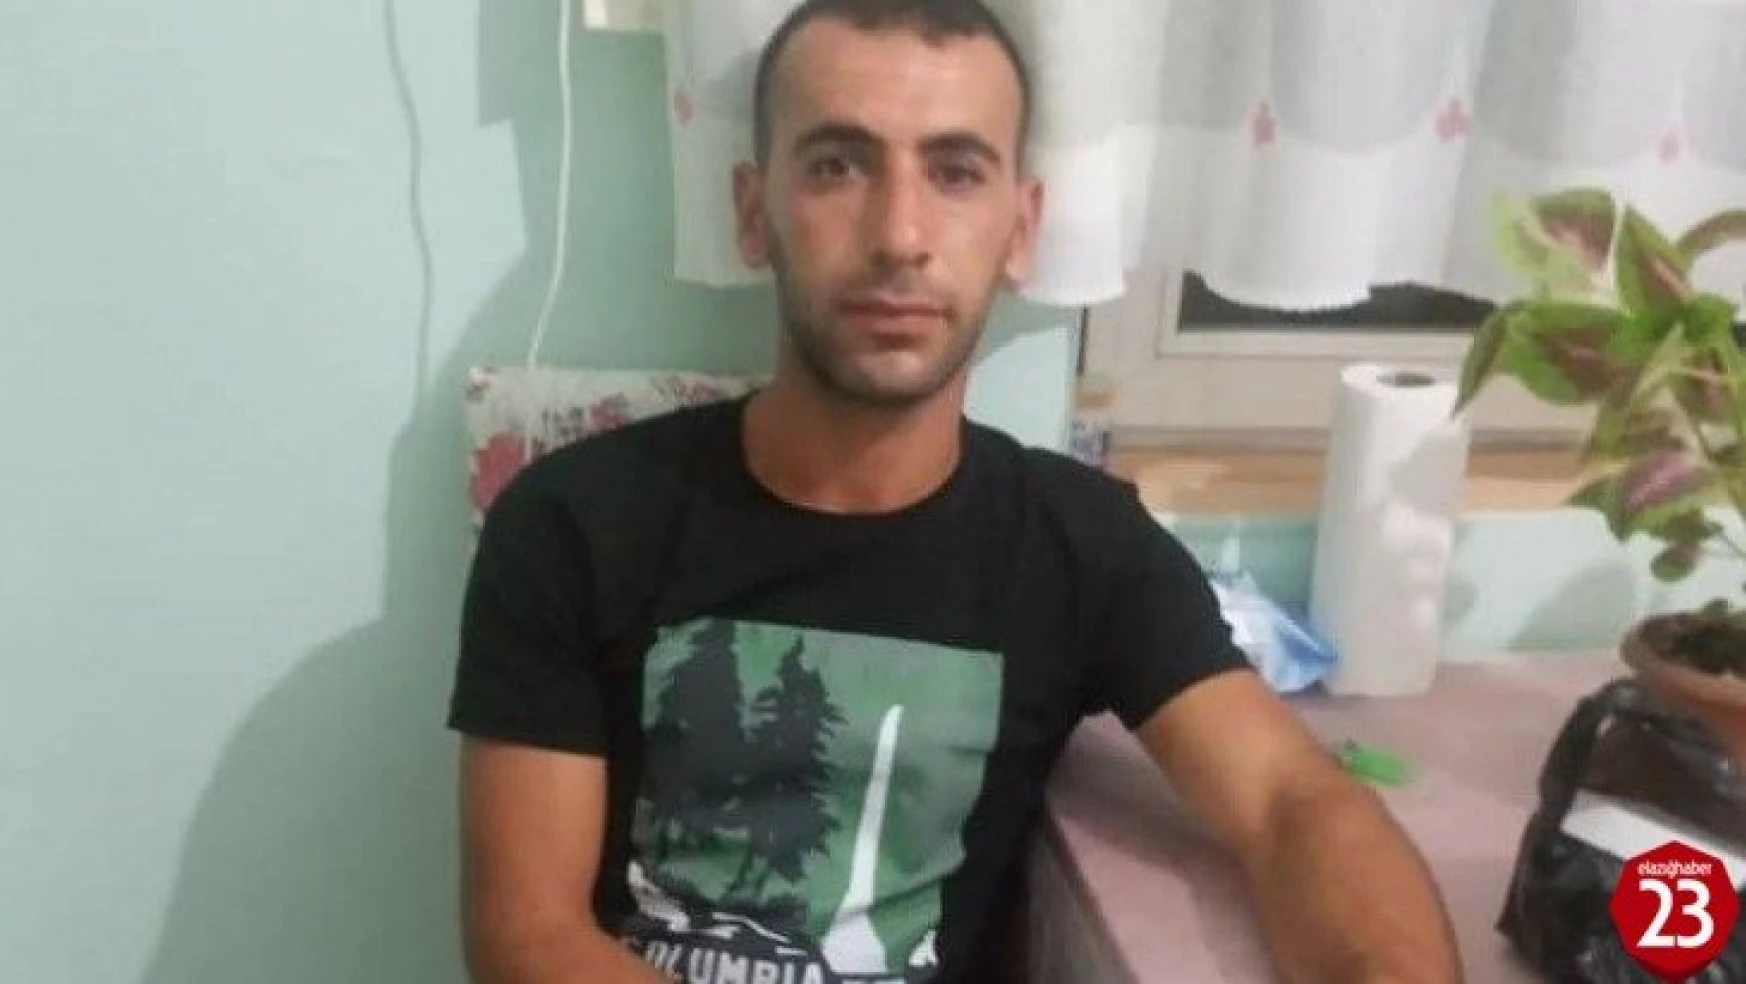 Elazığ'da 27 Yaşındaki Cumali Cankara'dan 3 Gündür Haber Alınamıyor